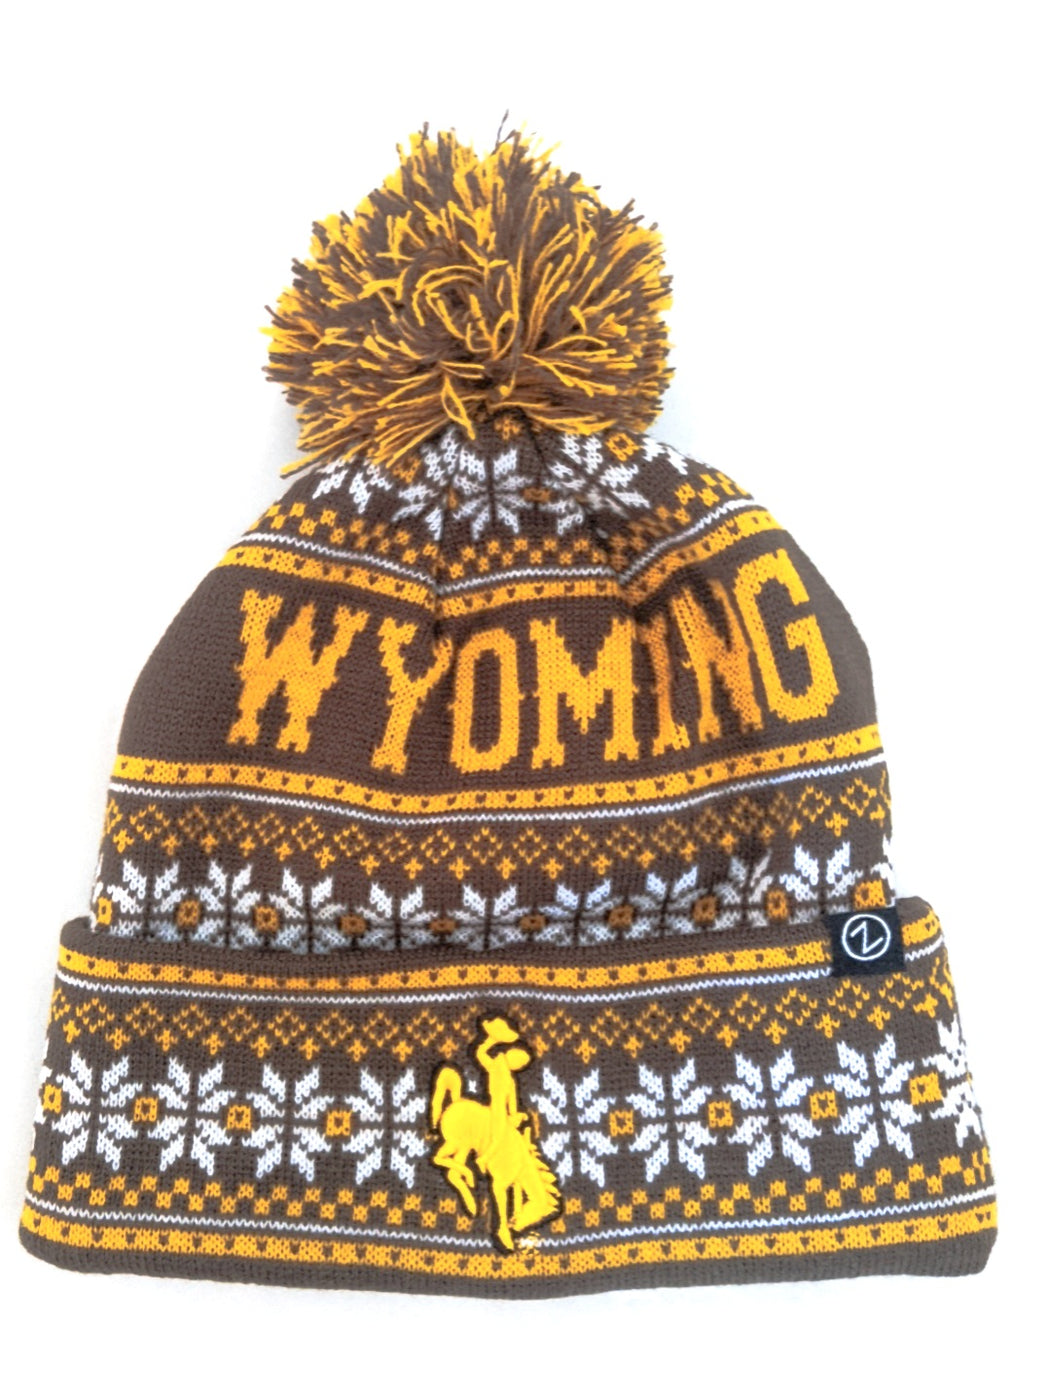 Wyoming Beanie, wyoming winter hat